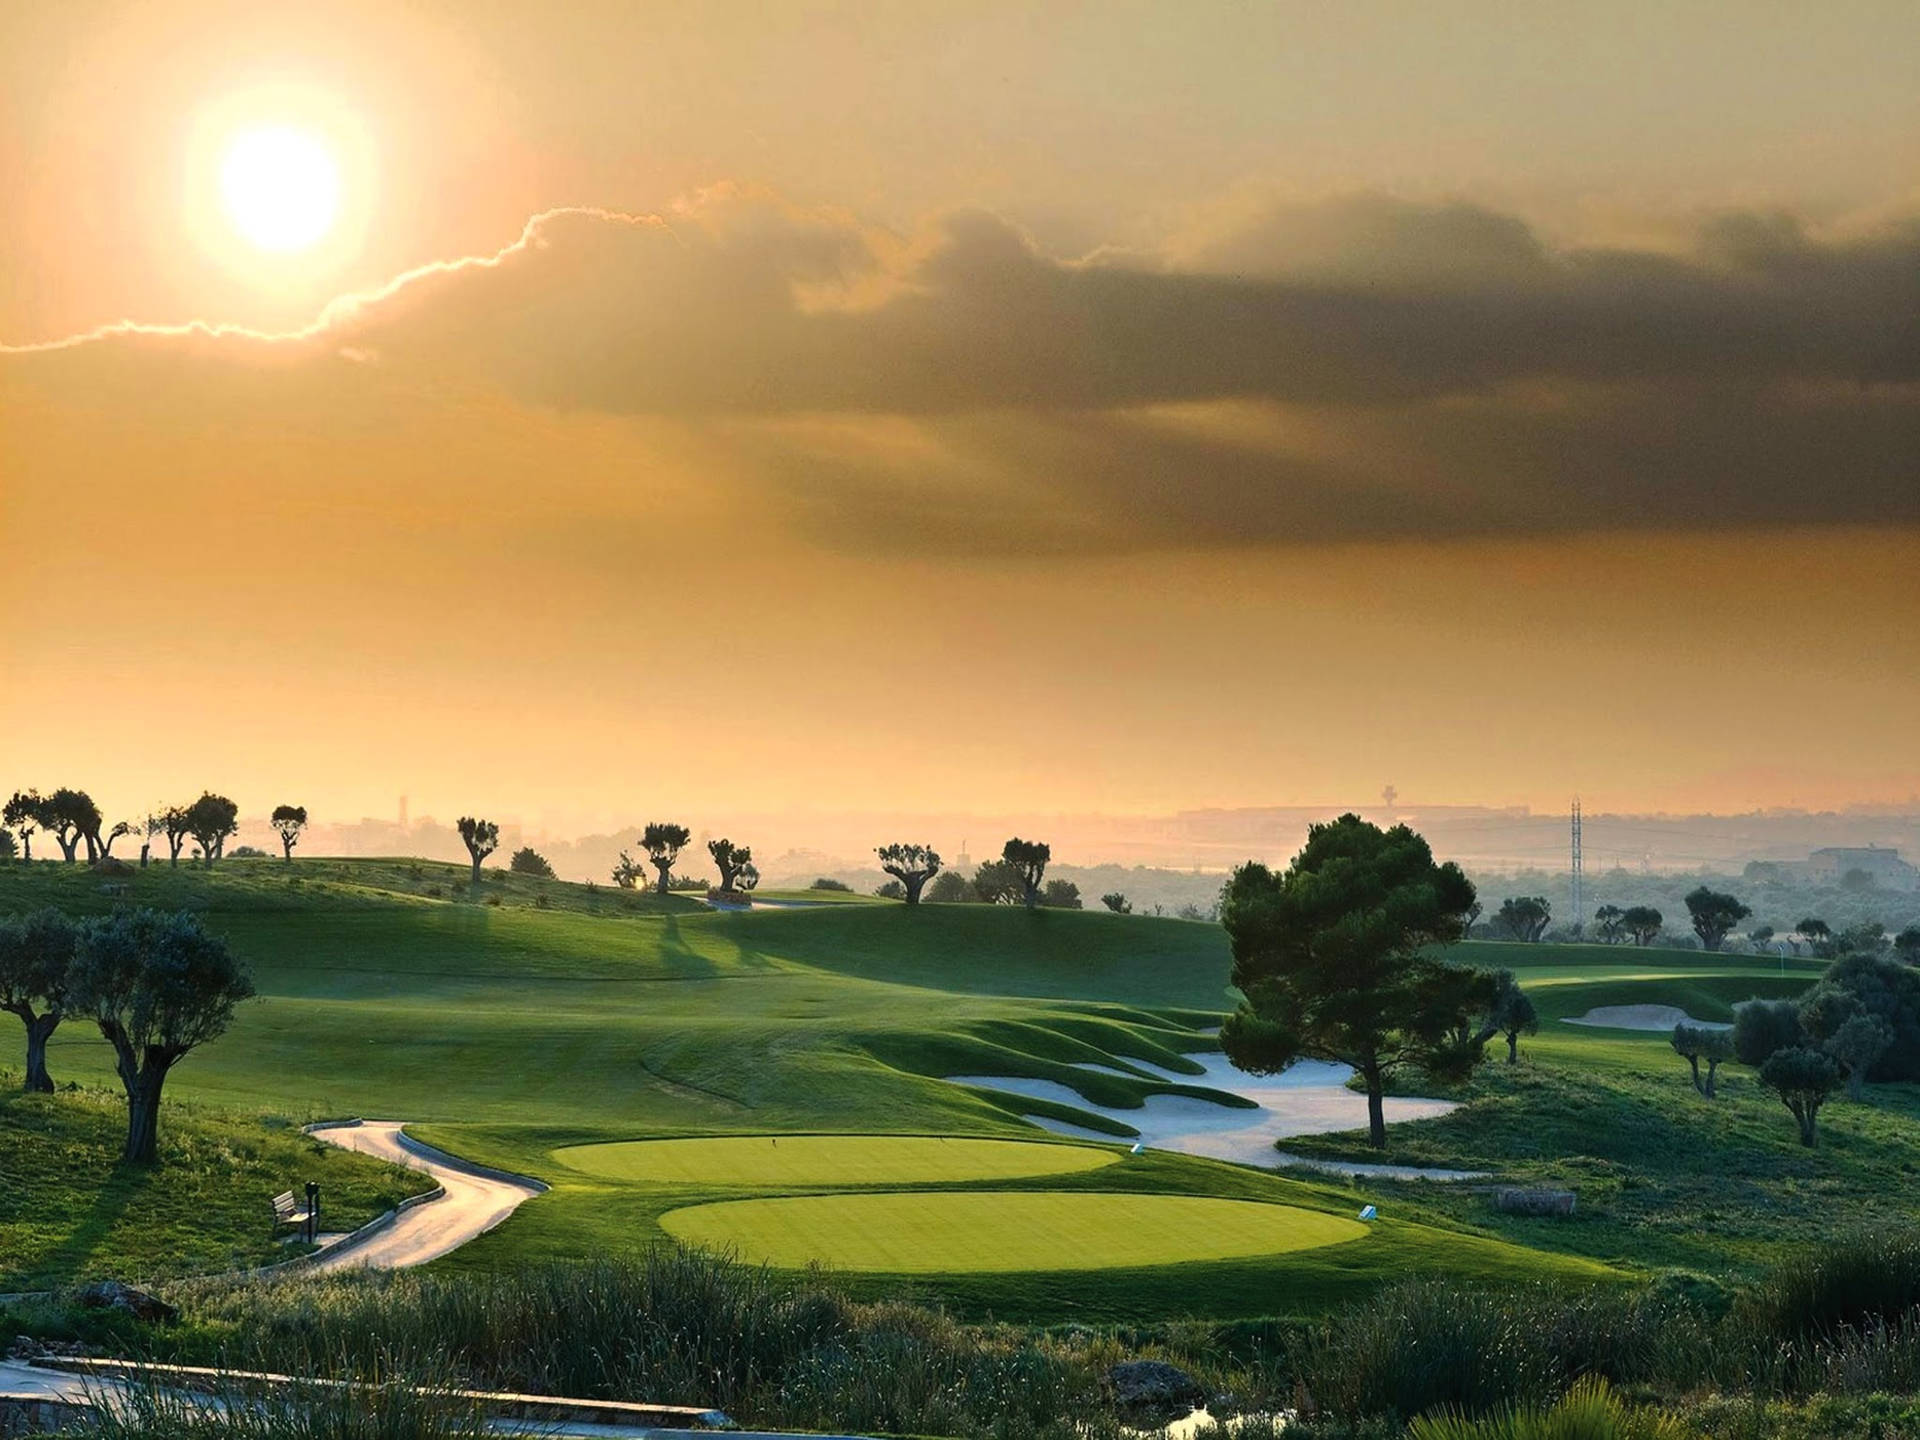 Ultra Hd Golf Course Orange Sky